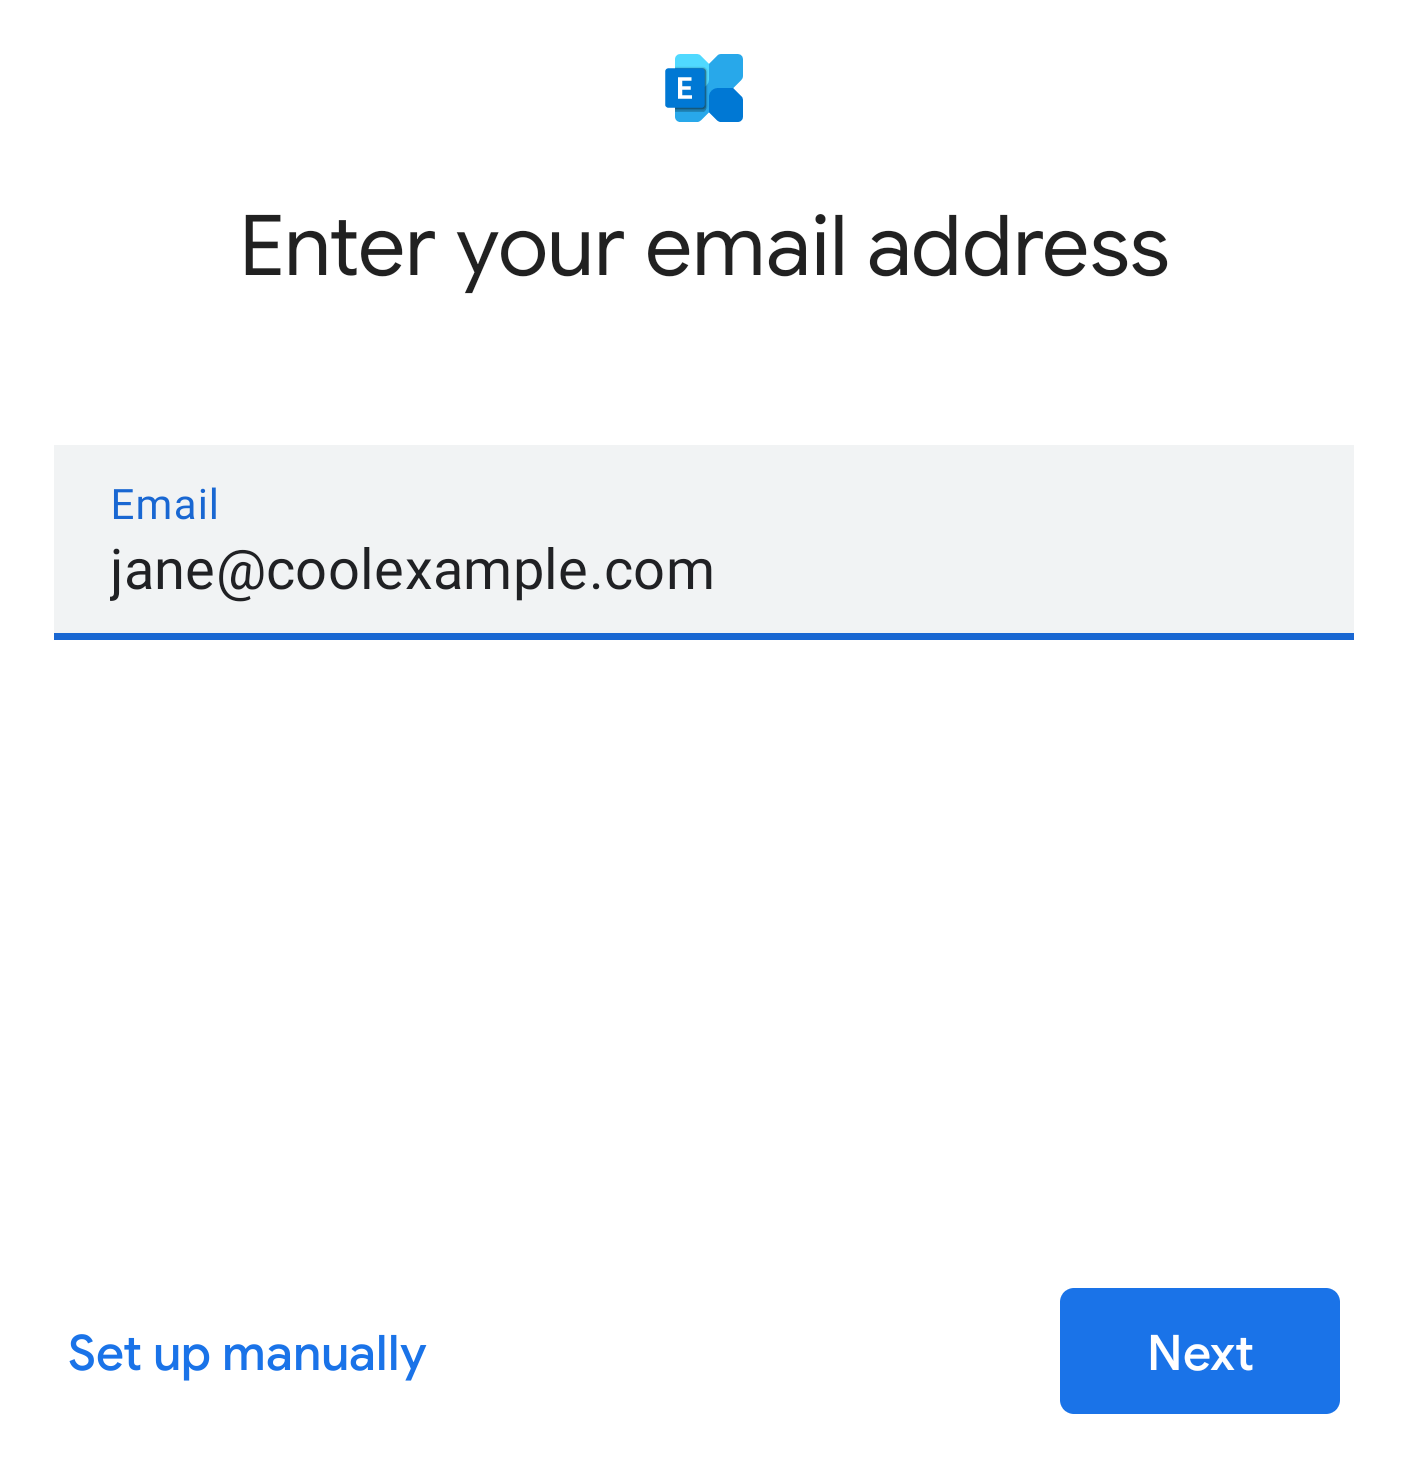 輸入email地址